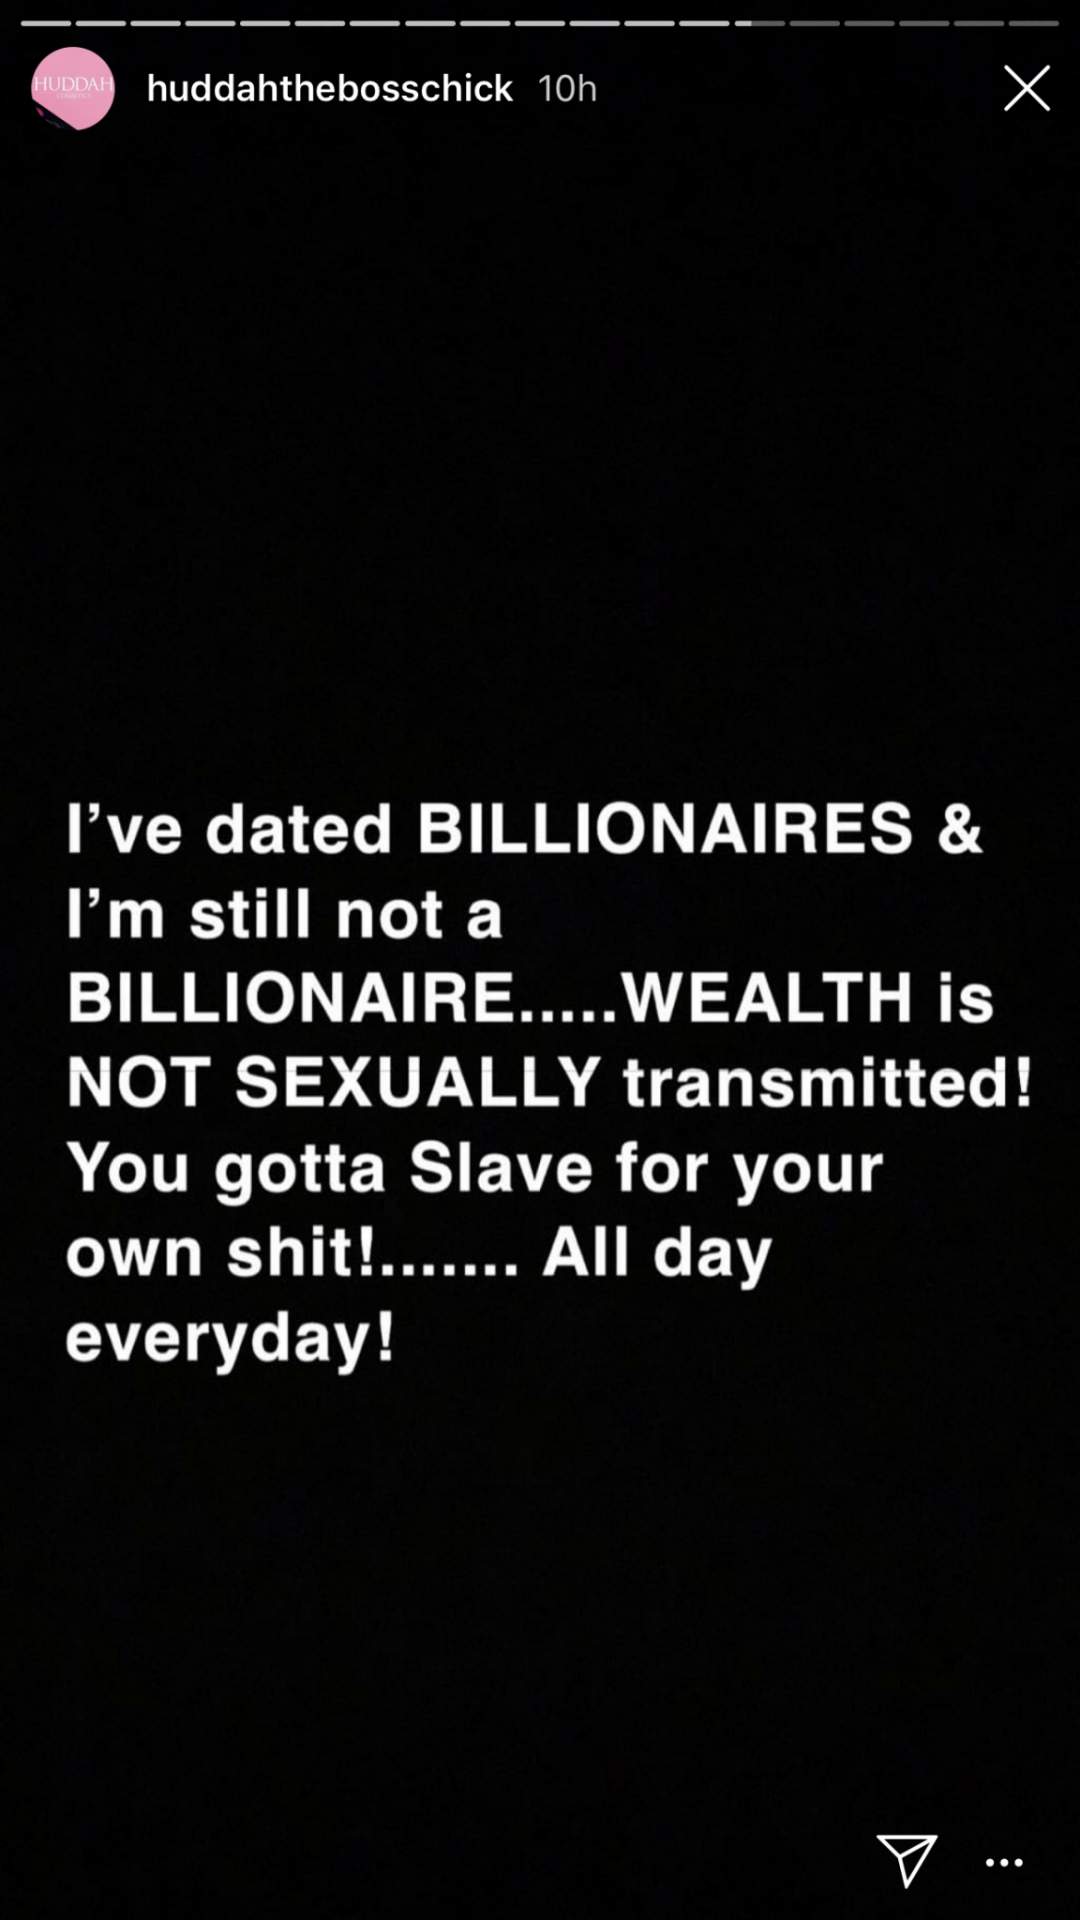 'I've dated billionaires and I'm still not a billionaire'- Huddah Monroe